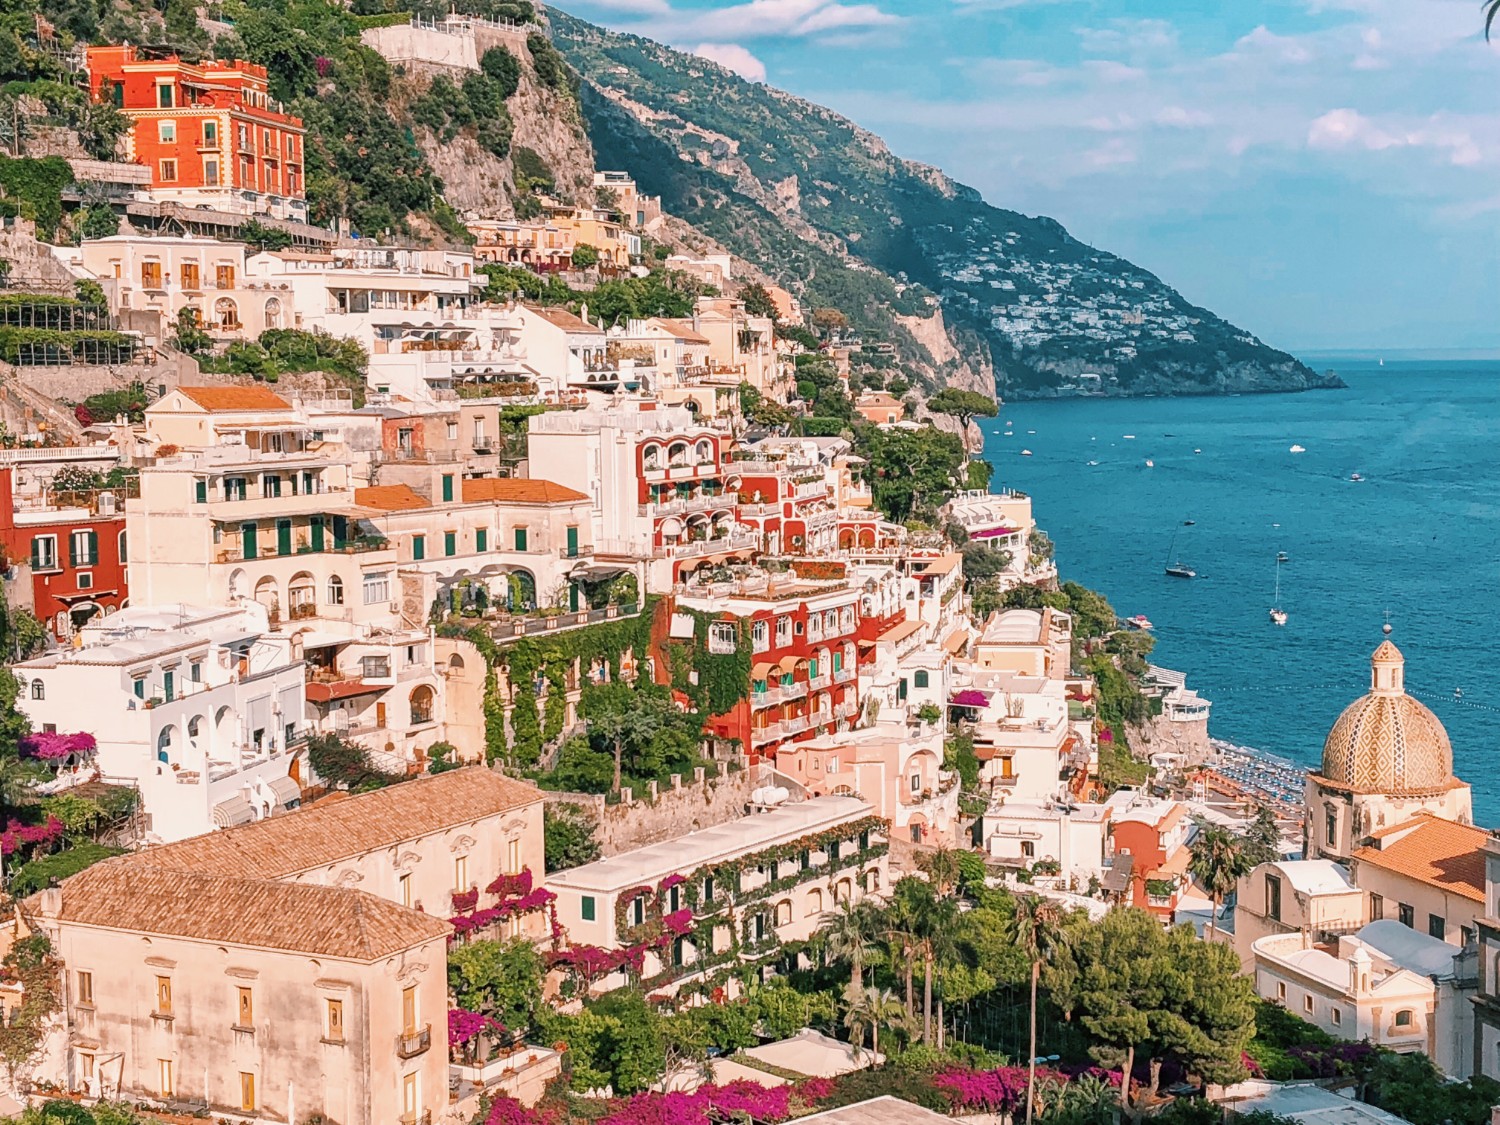 เช็คอินอิตาลีทางตอนใต้ "Positano, Amalfi coast" ของดี ไม่ได้มีแค่กรุงโรม - Pantip